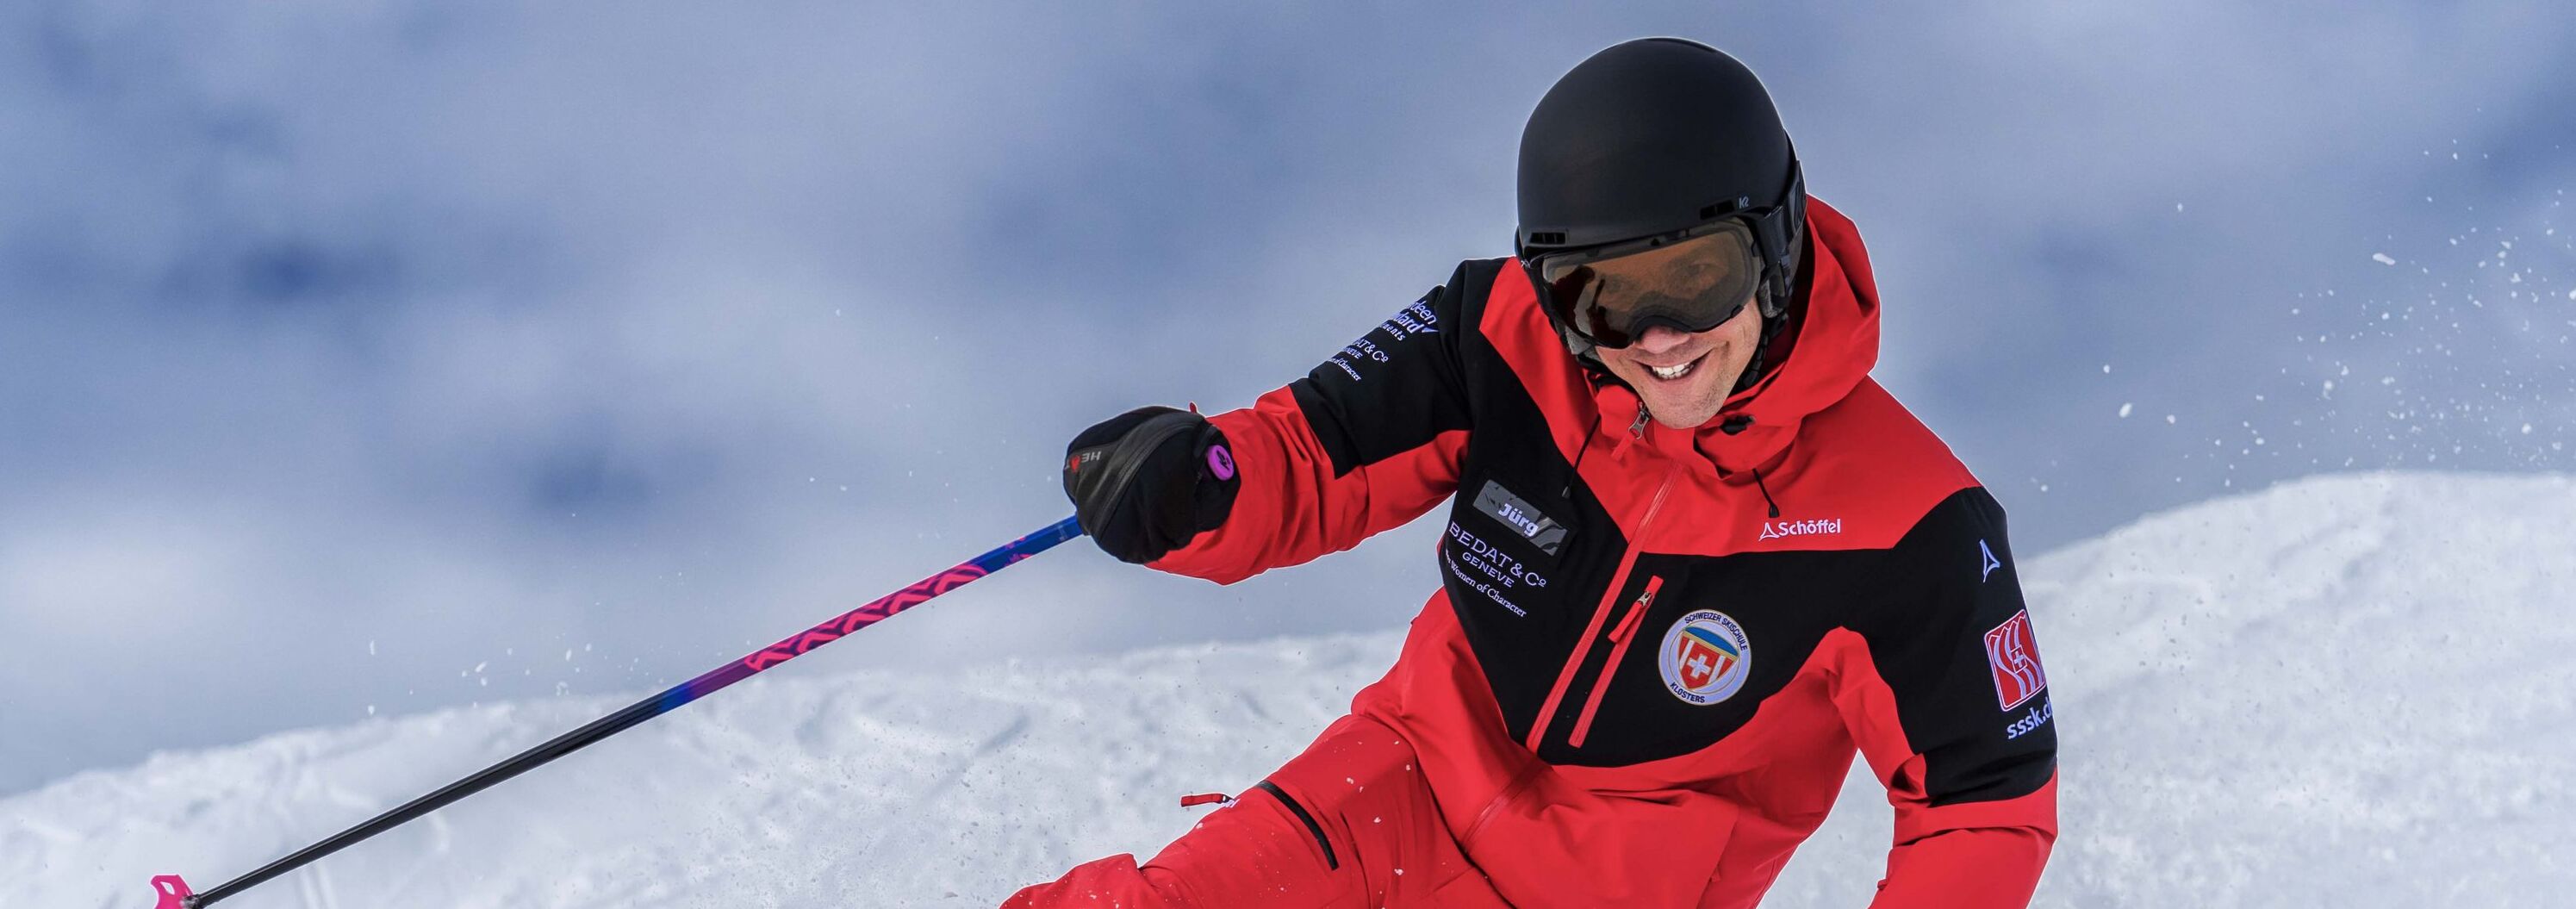 Skilehrer der Skischule Klosters fährt Telemark Ski 